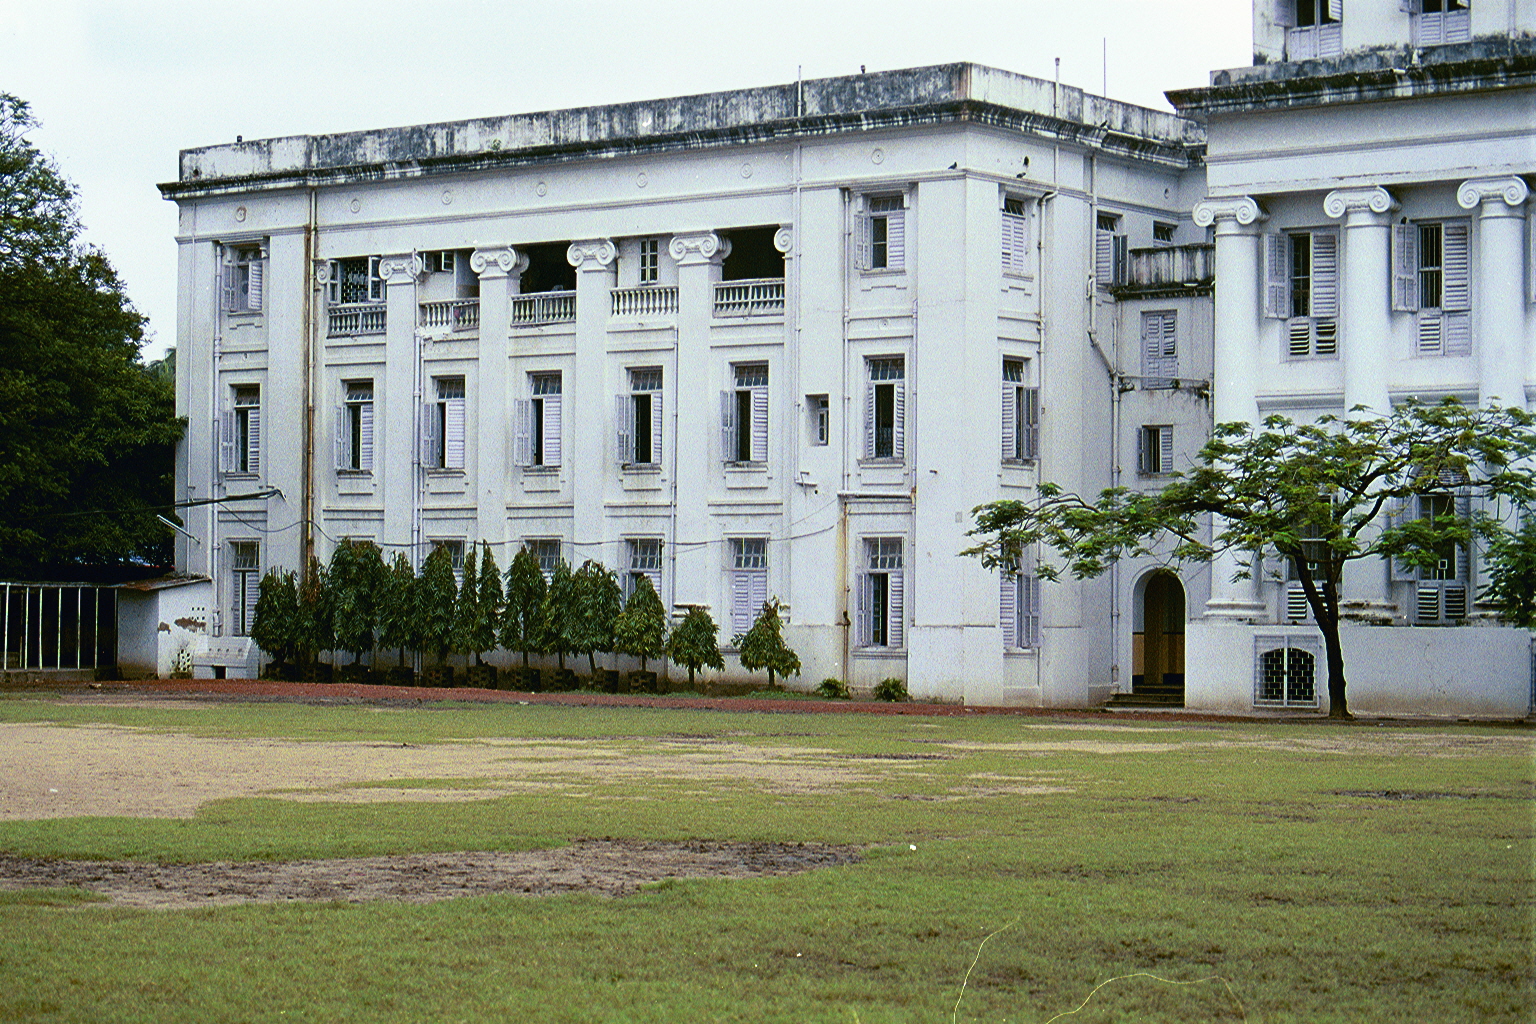 CLICK TO ENLARGE - 'La-Martiniere School' was founded in 1837 by Major-General CLAUDE MARTIN.  'La-Martiniere' has 3 campuses. (1) La-Martiniere, Calcutta, India; (2) La-Martiniere College, Lucknow, India; & La-Martiniere College, Lyons, France;